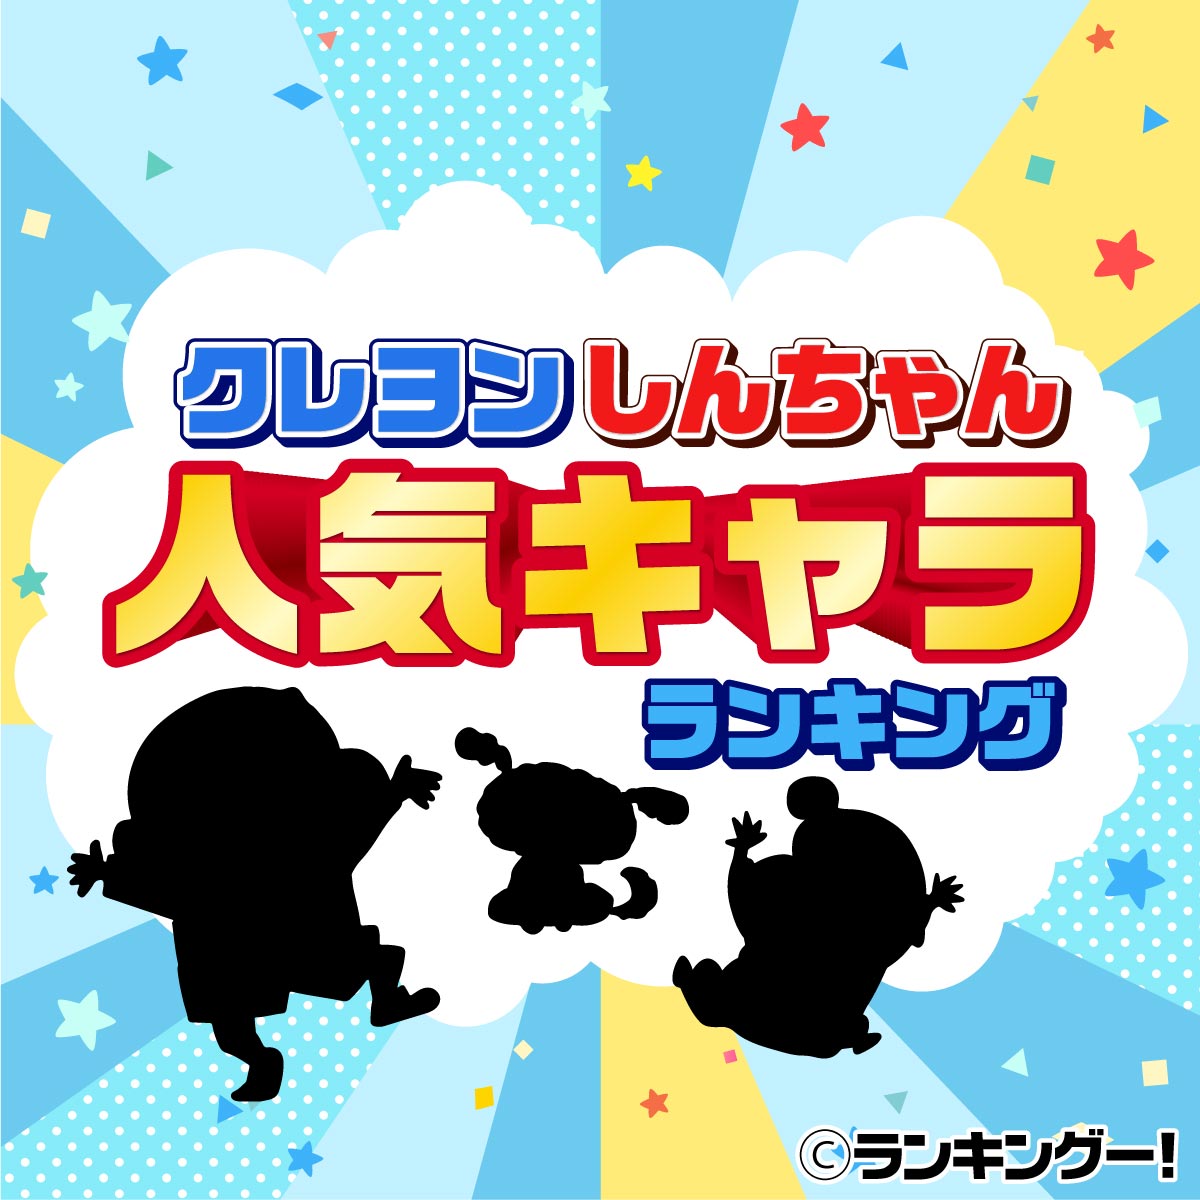 クレヨンしんちゃんキャラクター人気ランキングtop20 2020年最新版 11 15位 ランキングー